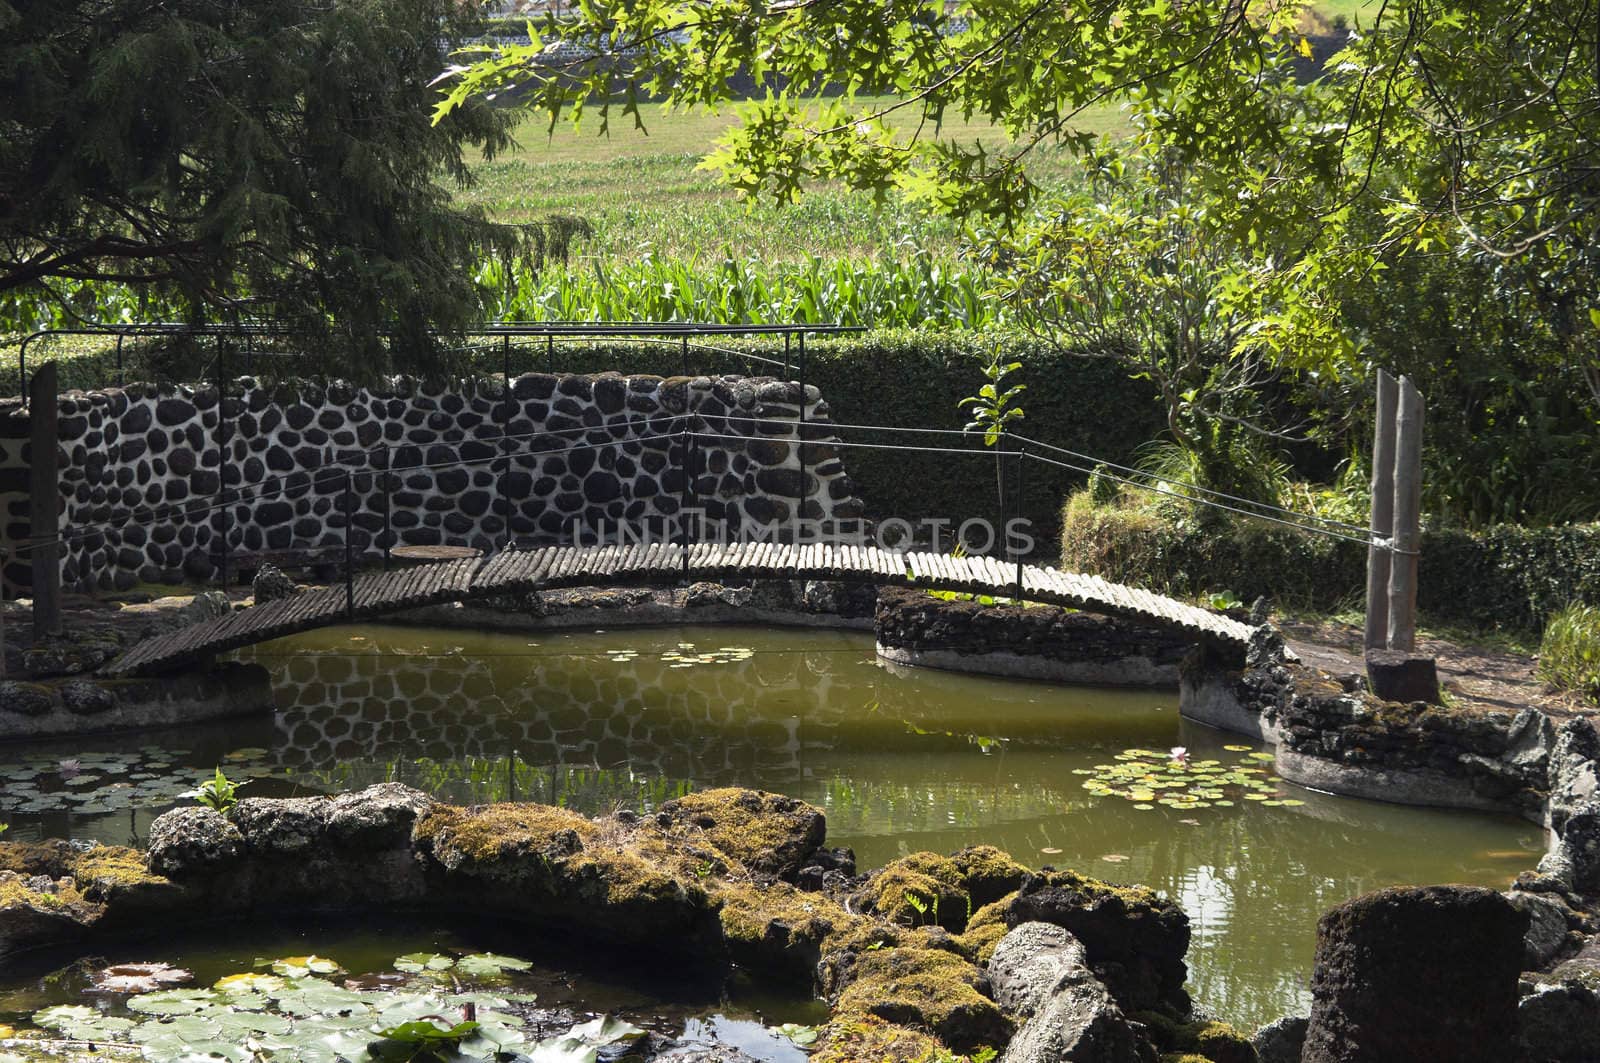 Footbridge over a small lake in a garden